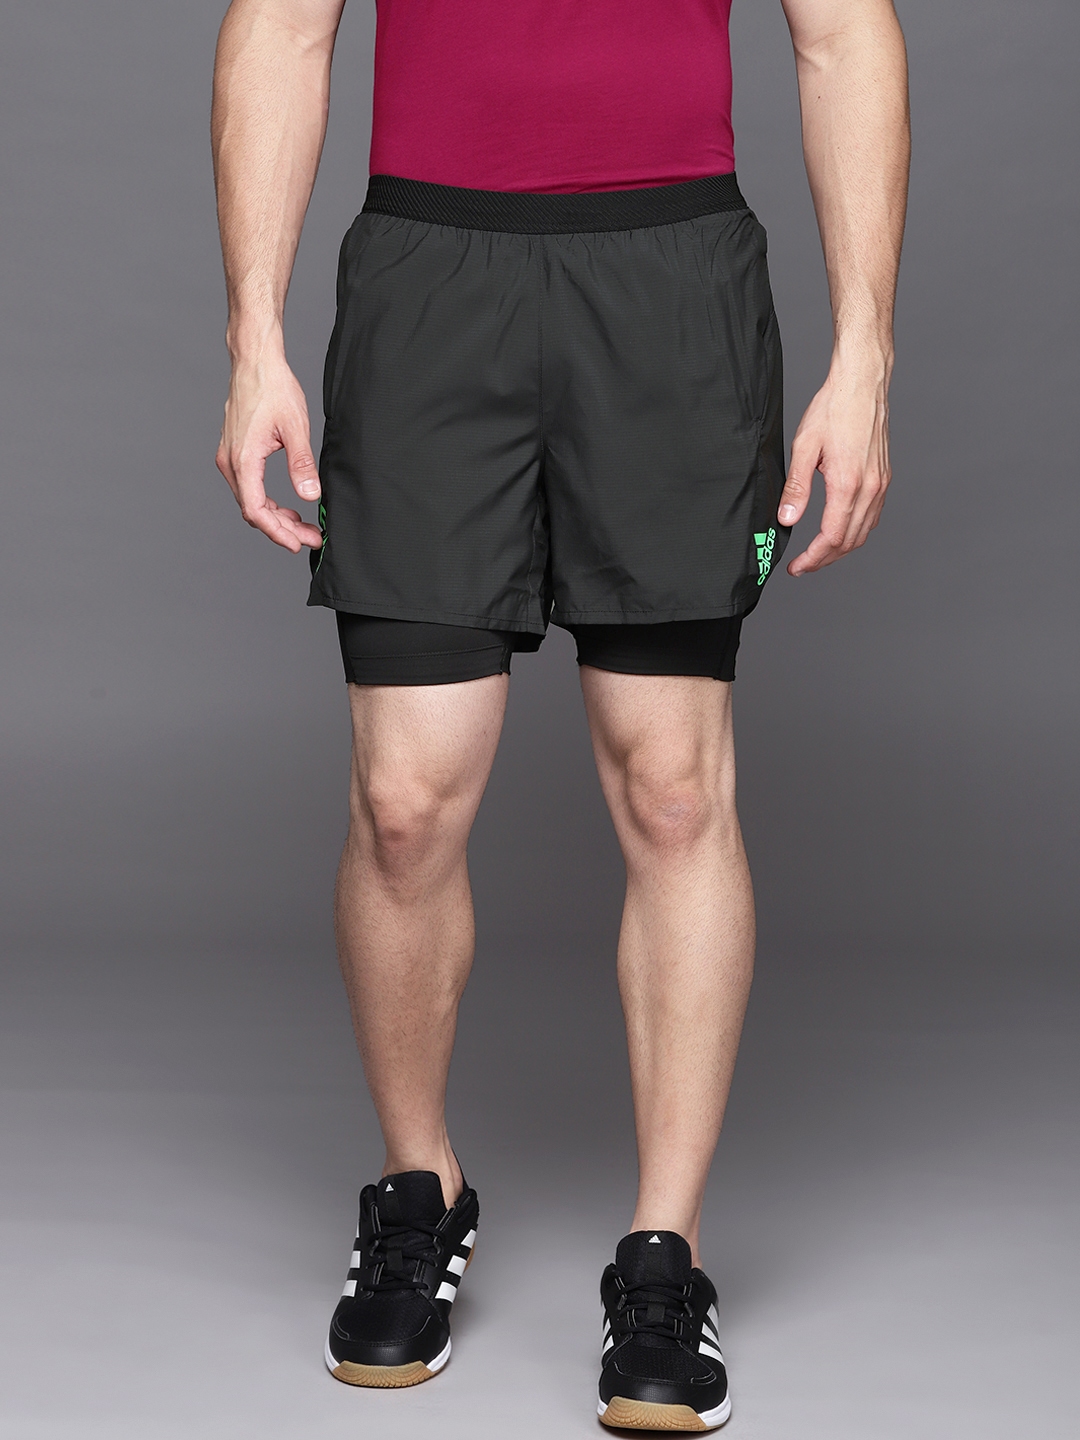 Buy ADIDAS Men Black Solid Adizero 2 In 1 Running Sustainable Shorts ...